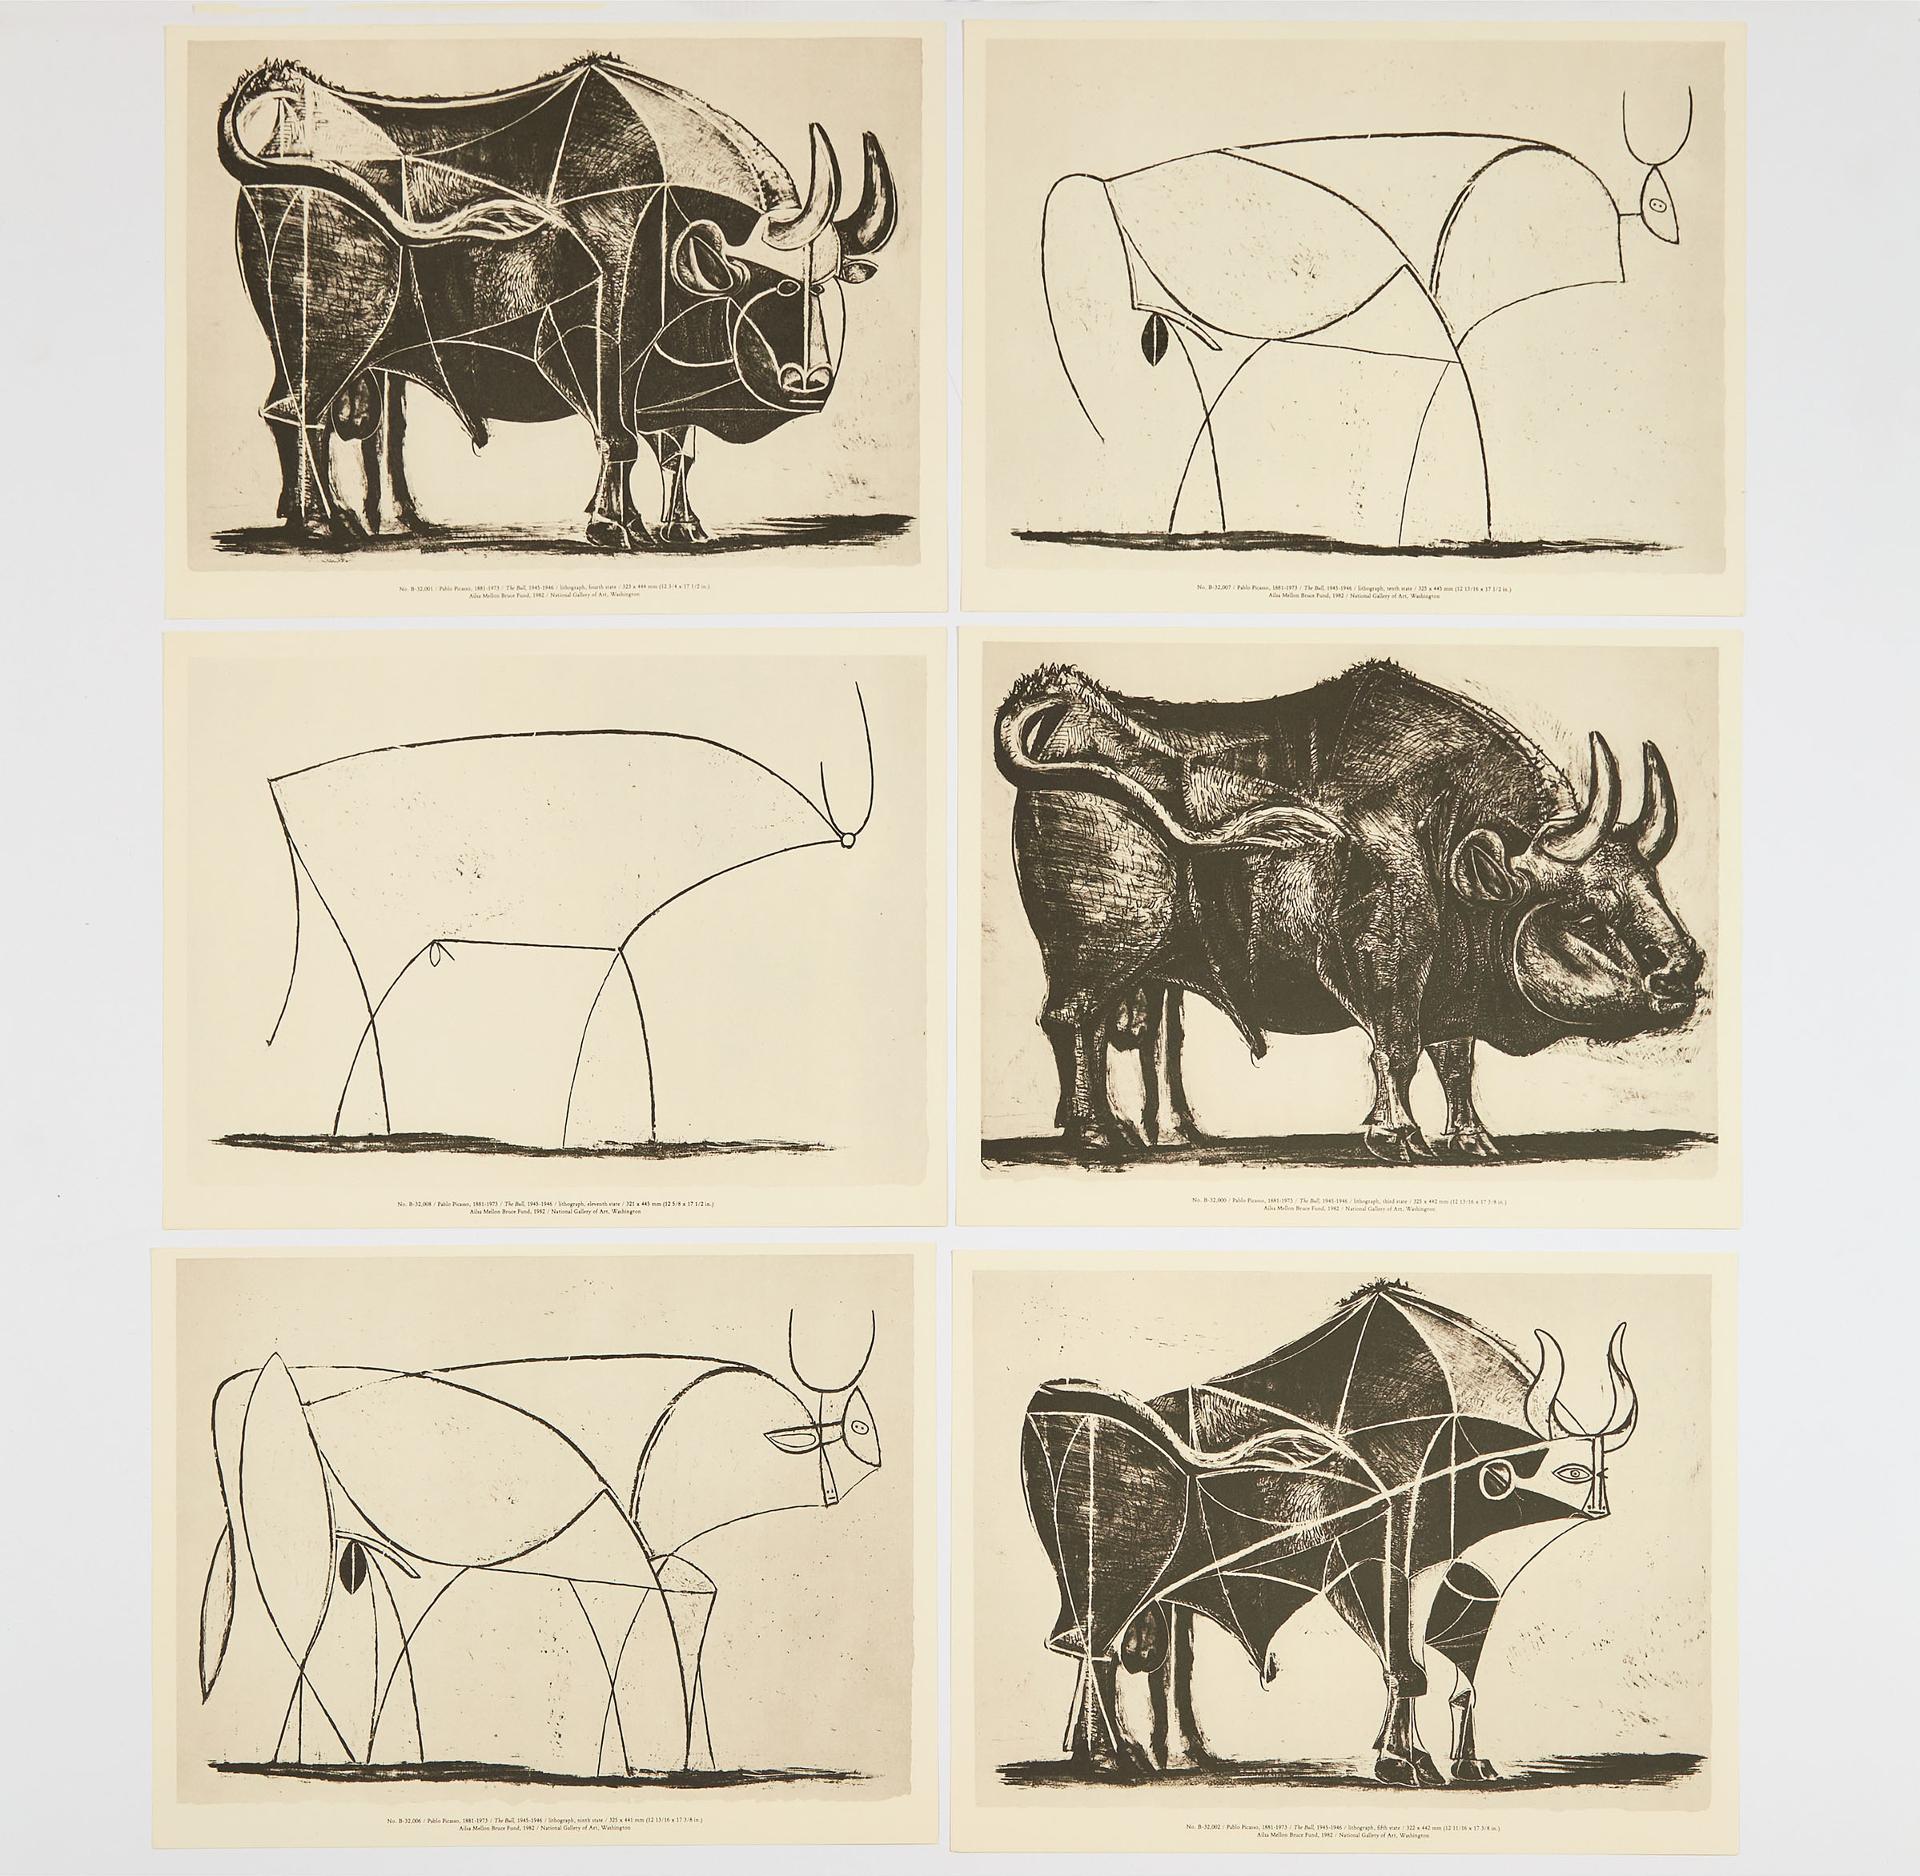 Pablo Ruiz Picasso (1881-1973) - THE BULL, 1945-1946